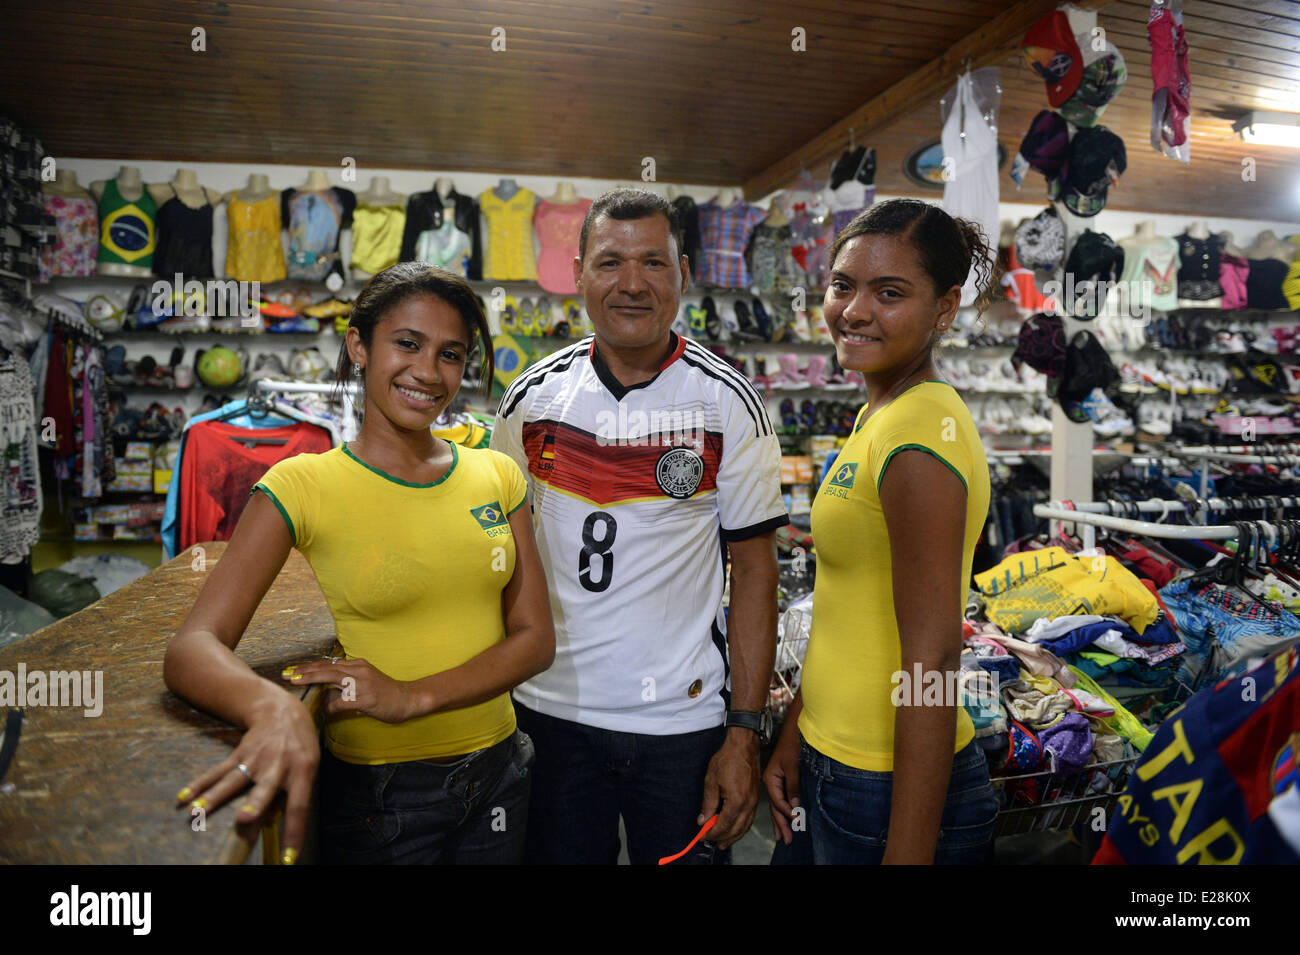 brazil soccer team shirt